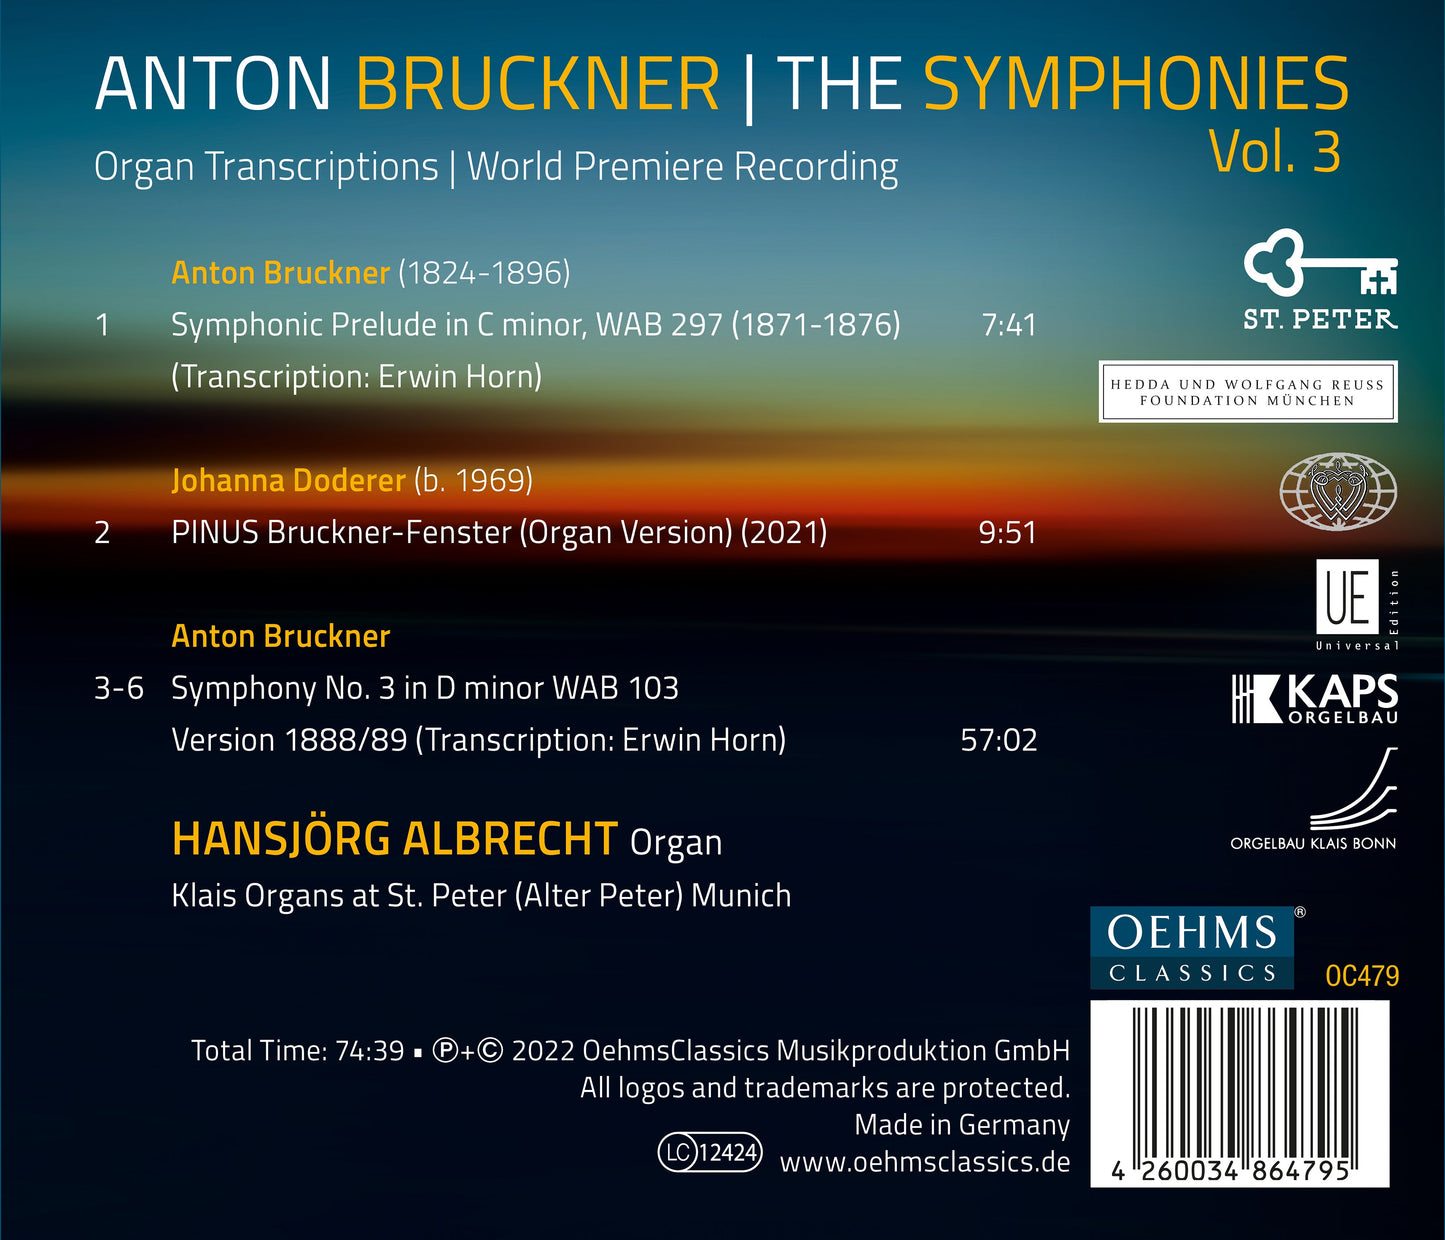 The Bruckner Symphonies, Vol. 3